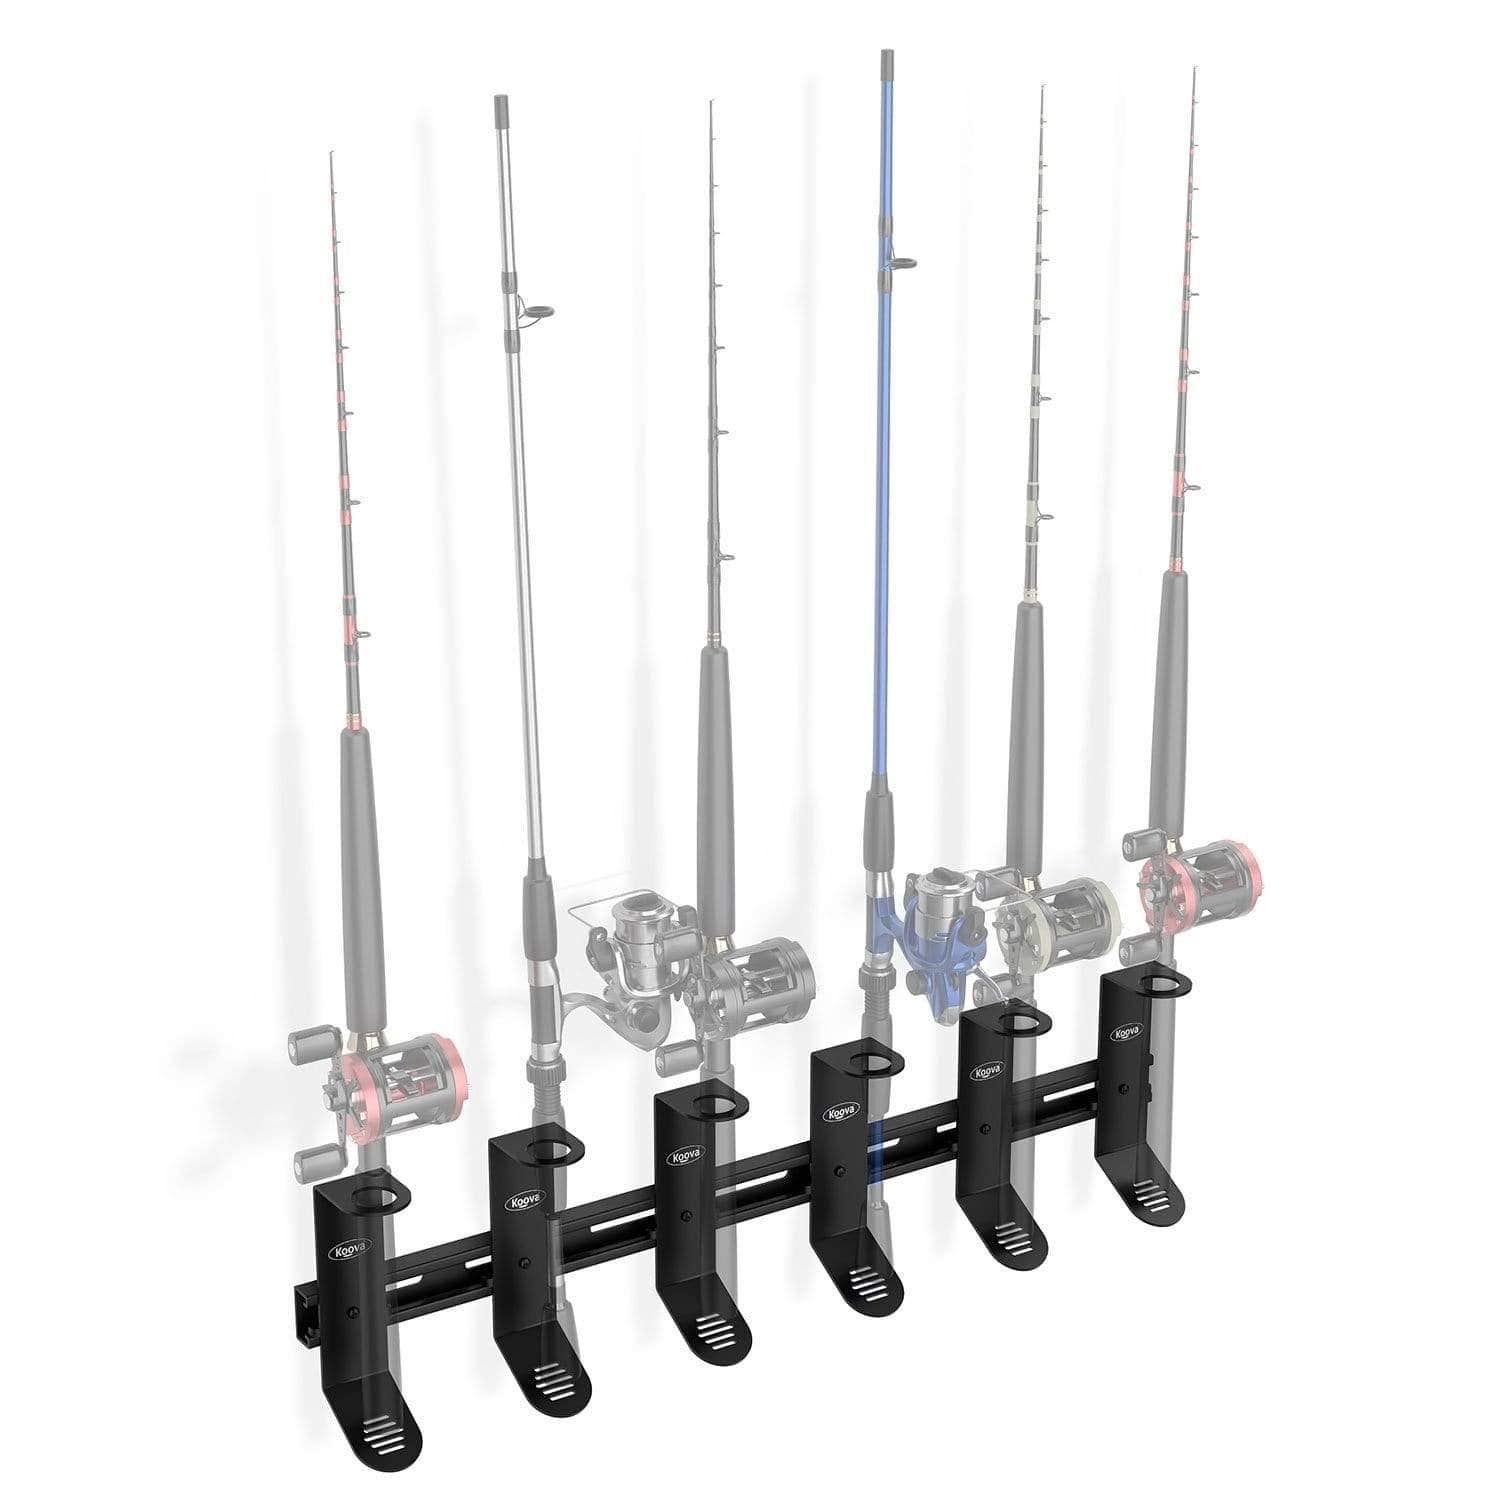 http://koova.com/cdn/shop/products/spinning-fishing-rod-rack-for-spinning-rods.jpg?v=1626989045